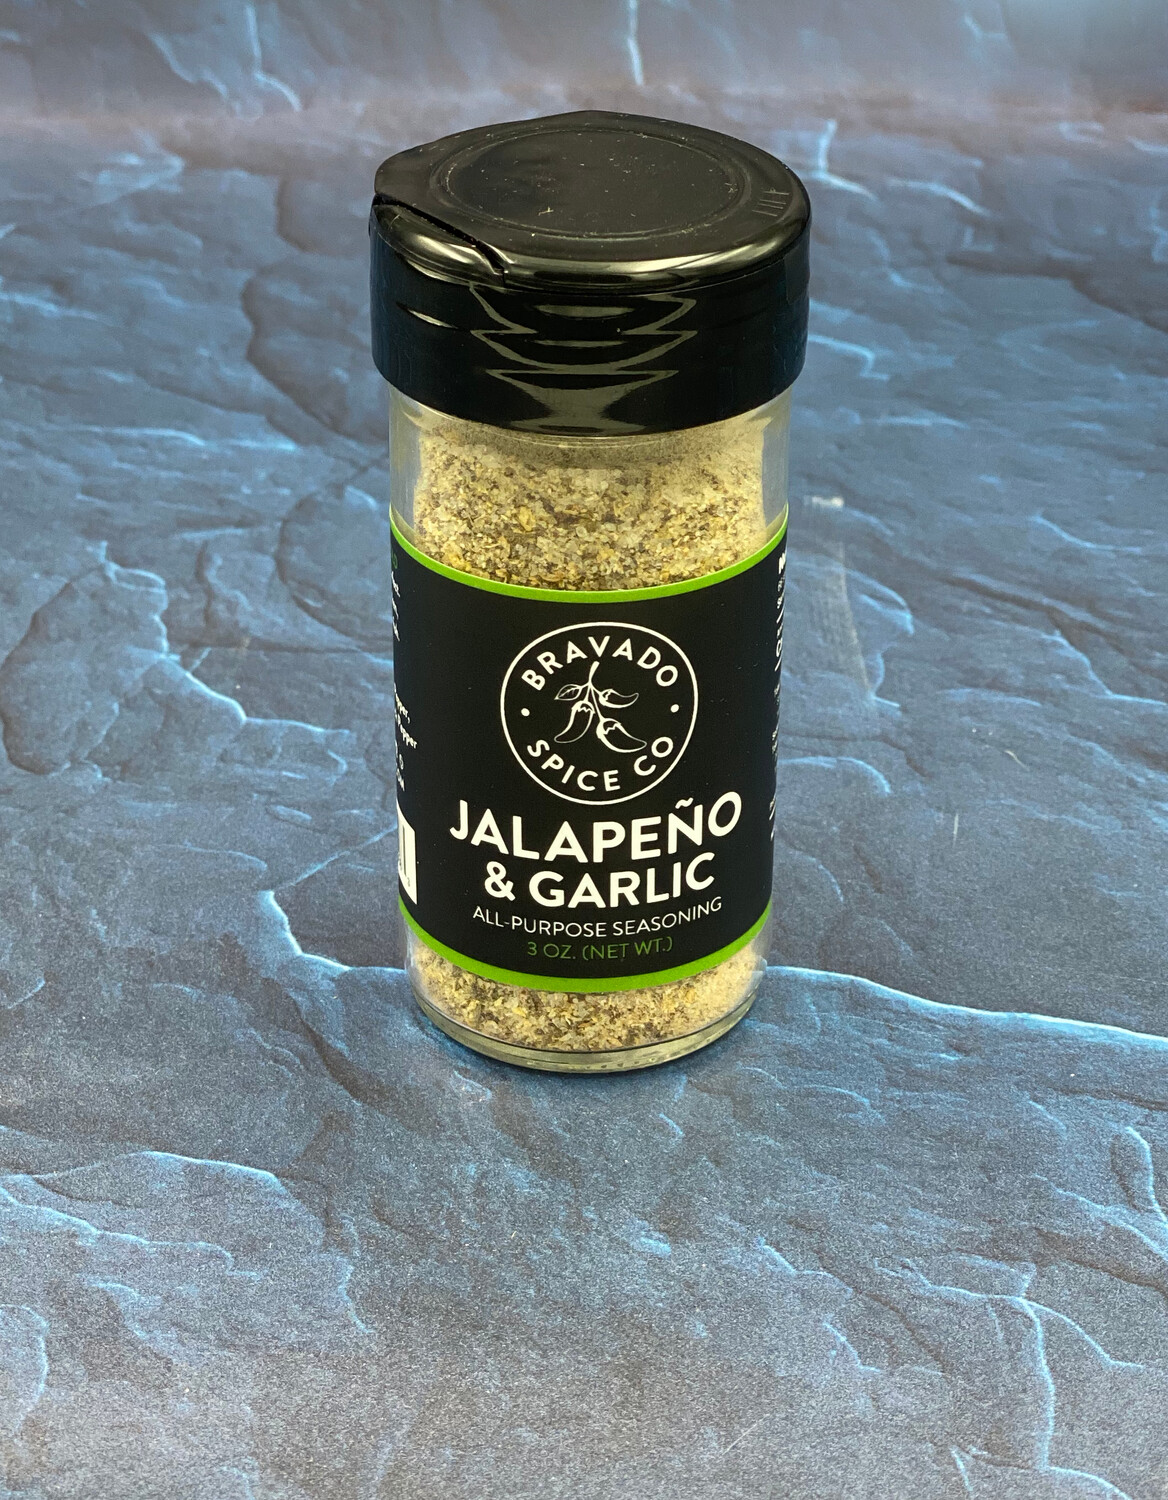 Jalapeno & Garlic All Purpose Seasoning Bravado Spice Co.